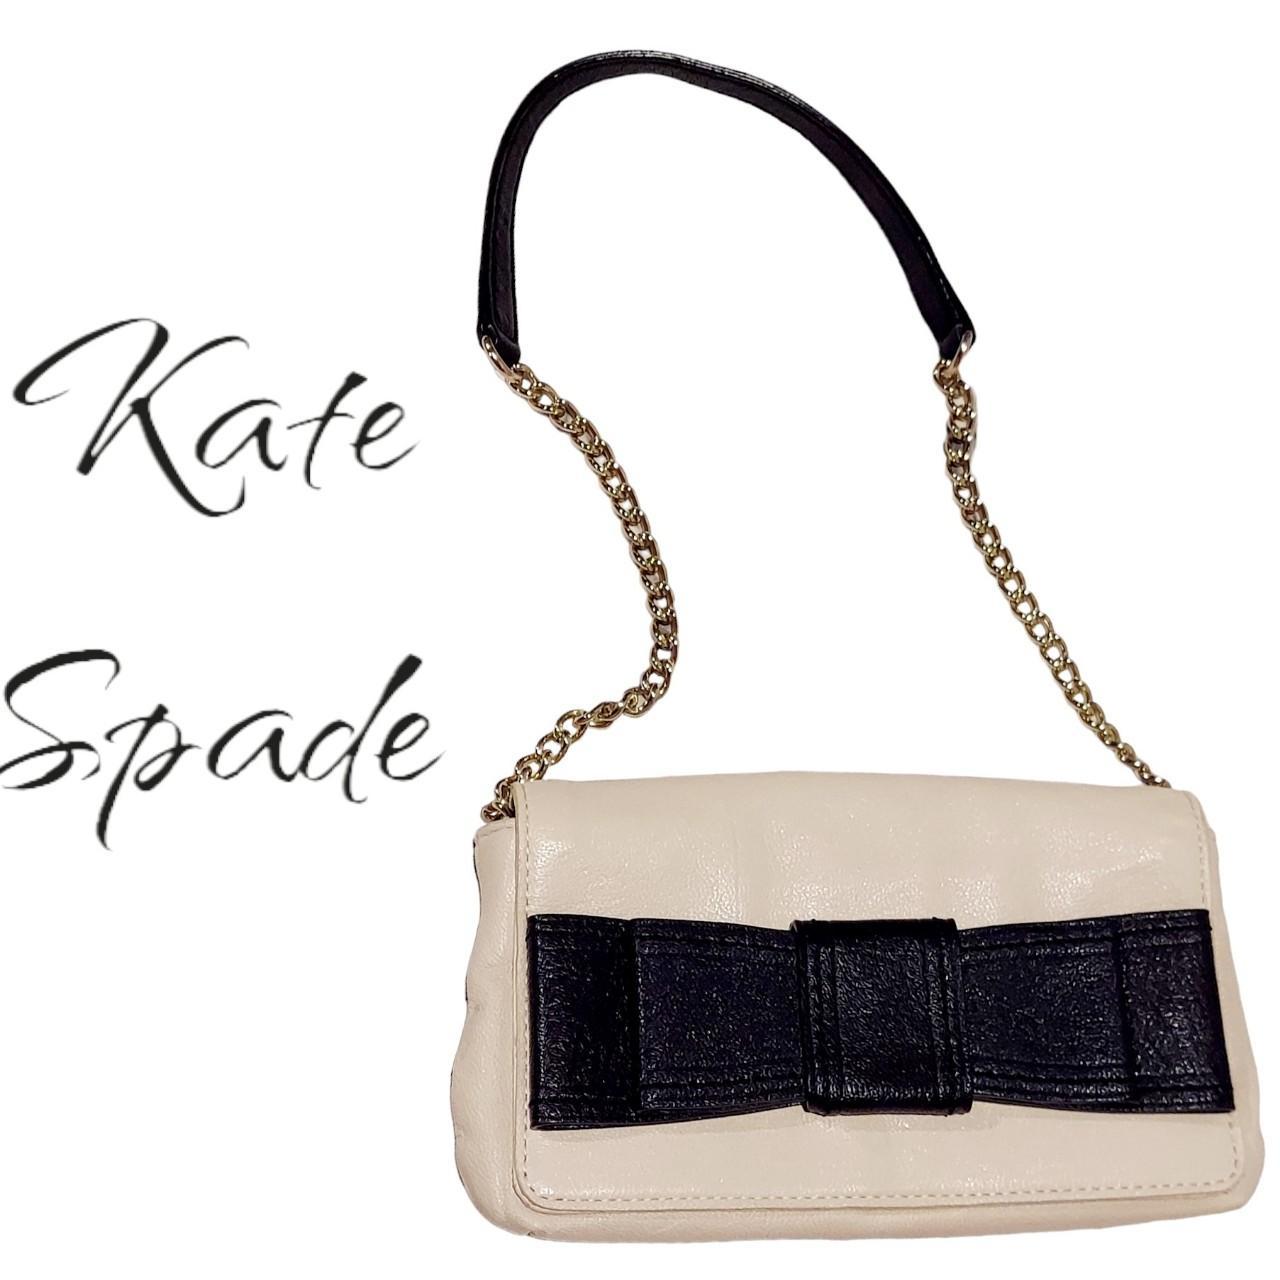 Kate Spade shoulder bag black gold chain